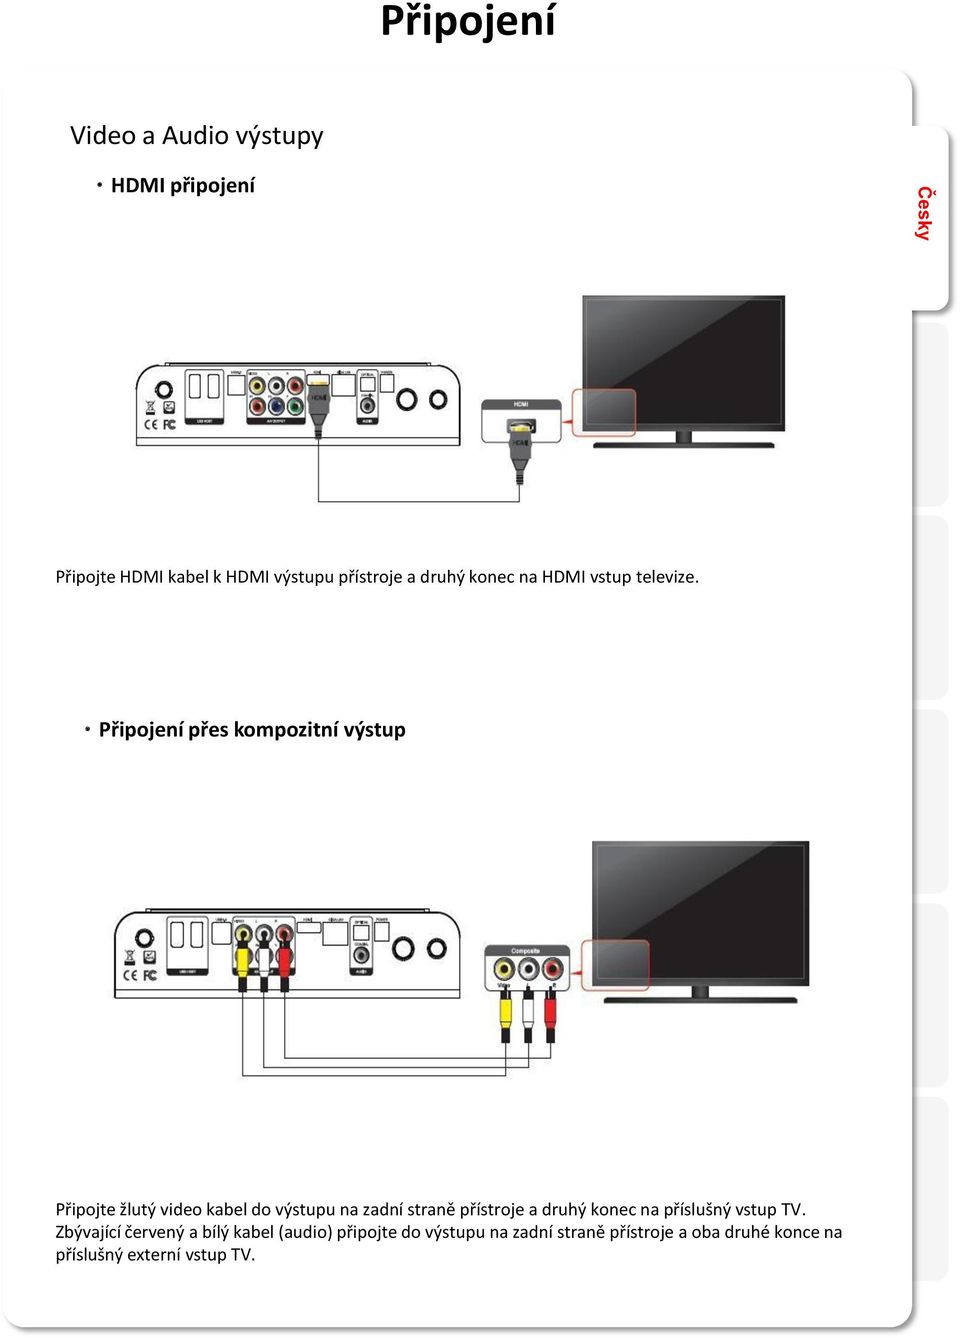 ㆍPřipojení přes kompozitní výstup Připojte žlutý video kabel do výstupu na zadní straně přístroje a